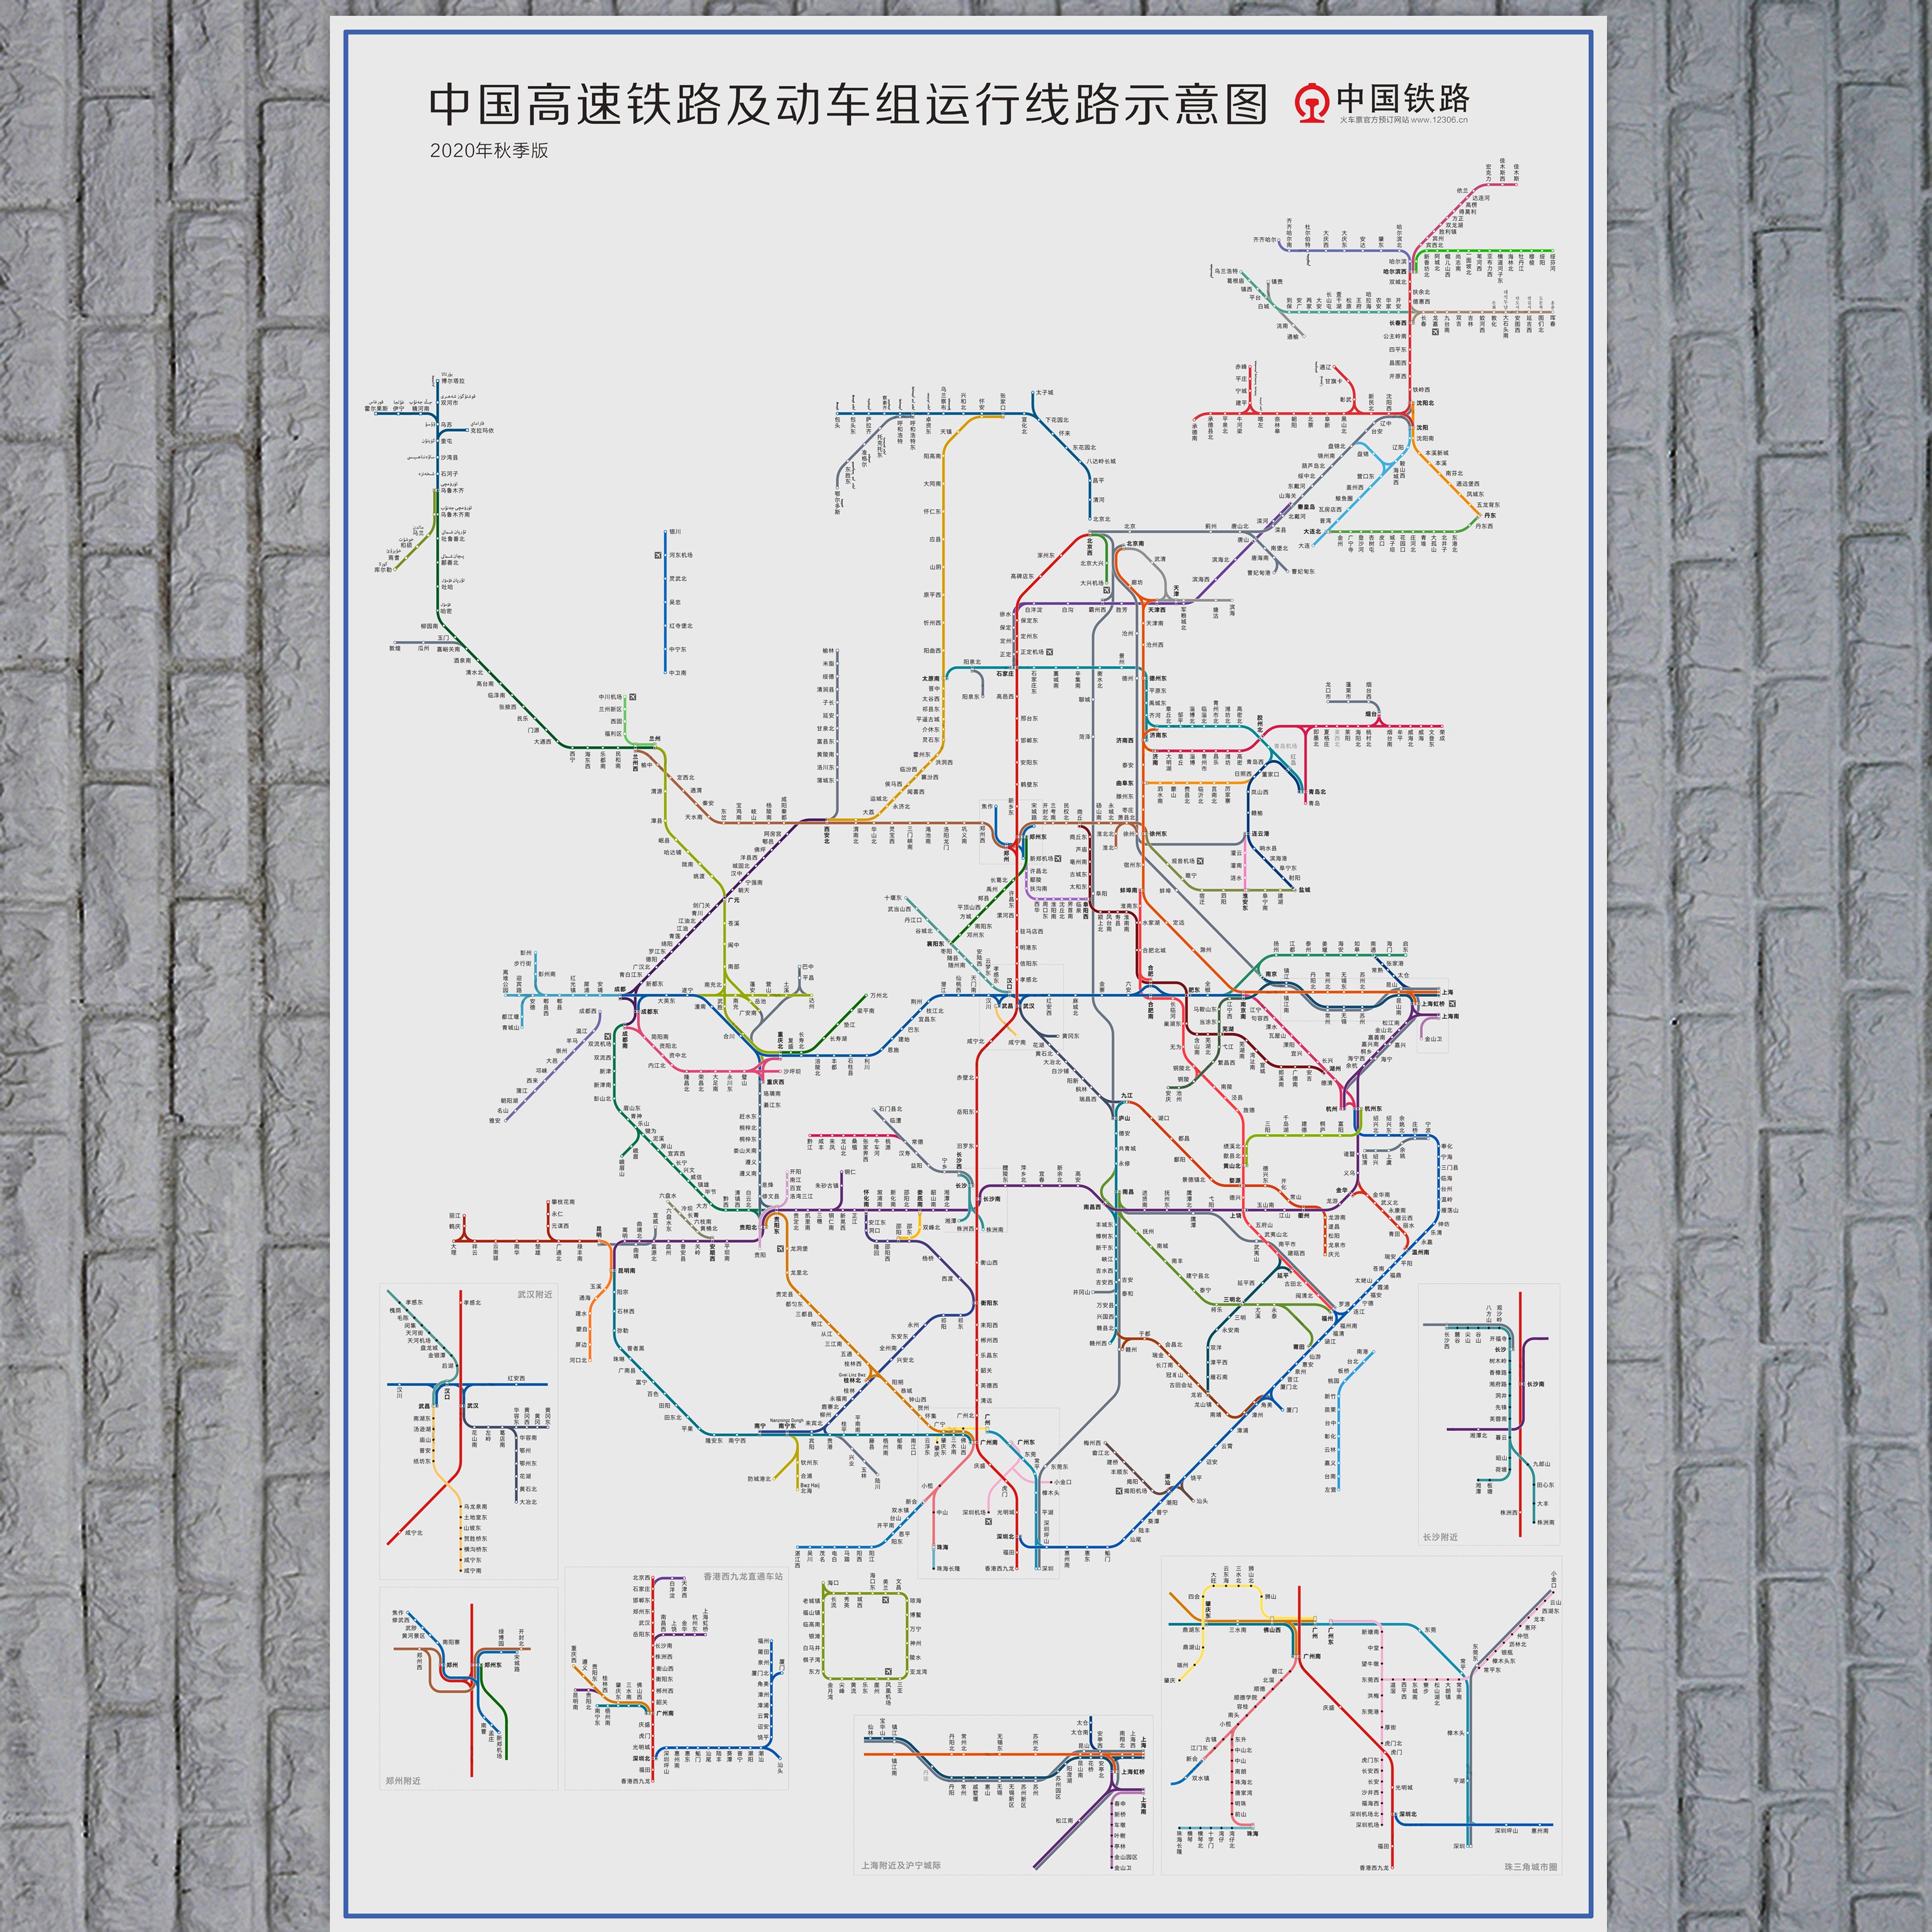 中国高速铁路及动车组线路示意图中国世界区域地势图海报挂图墙贴